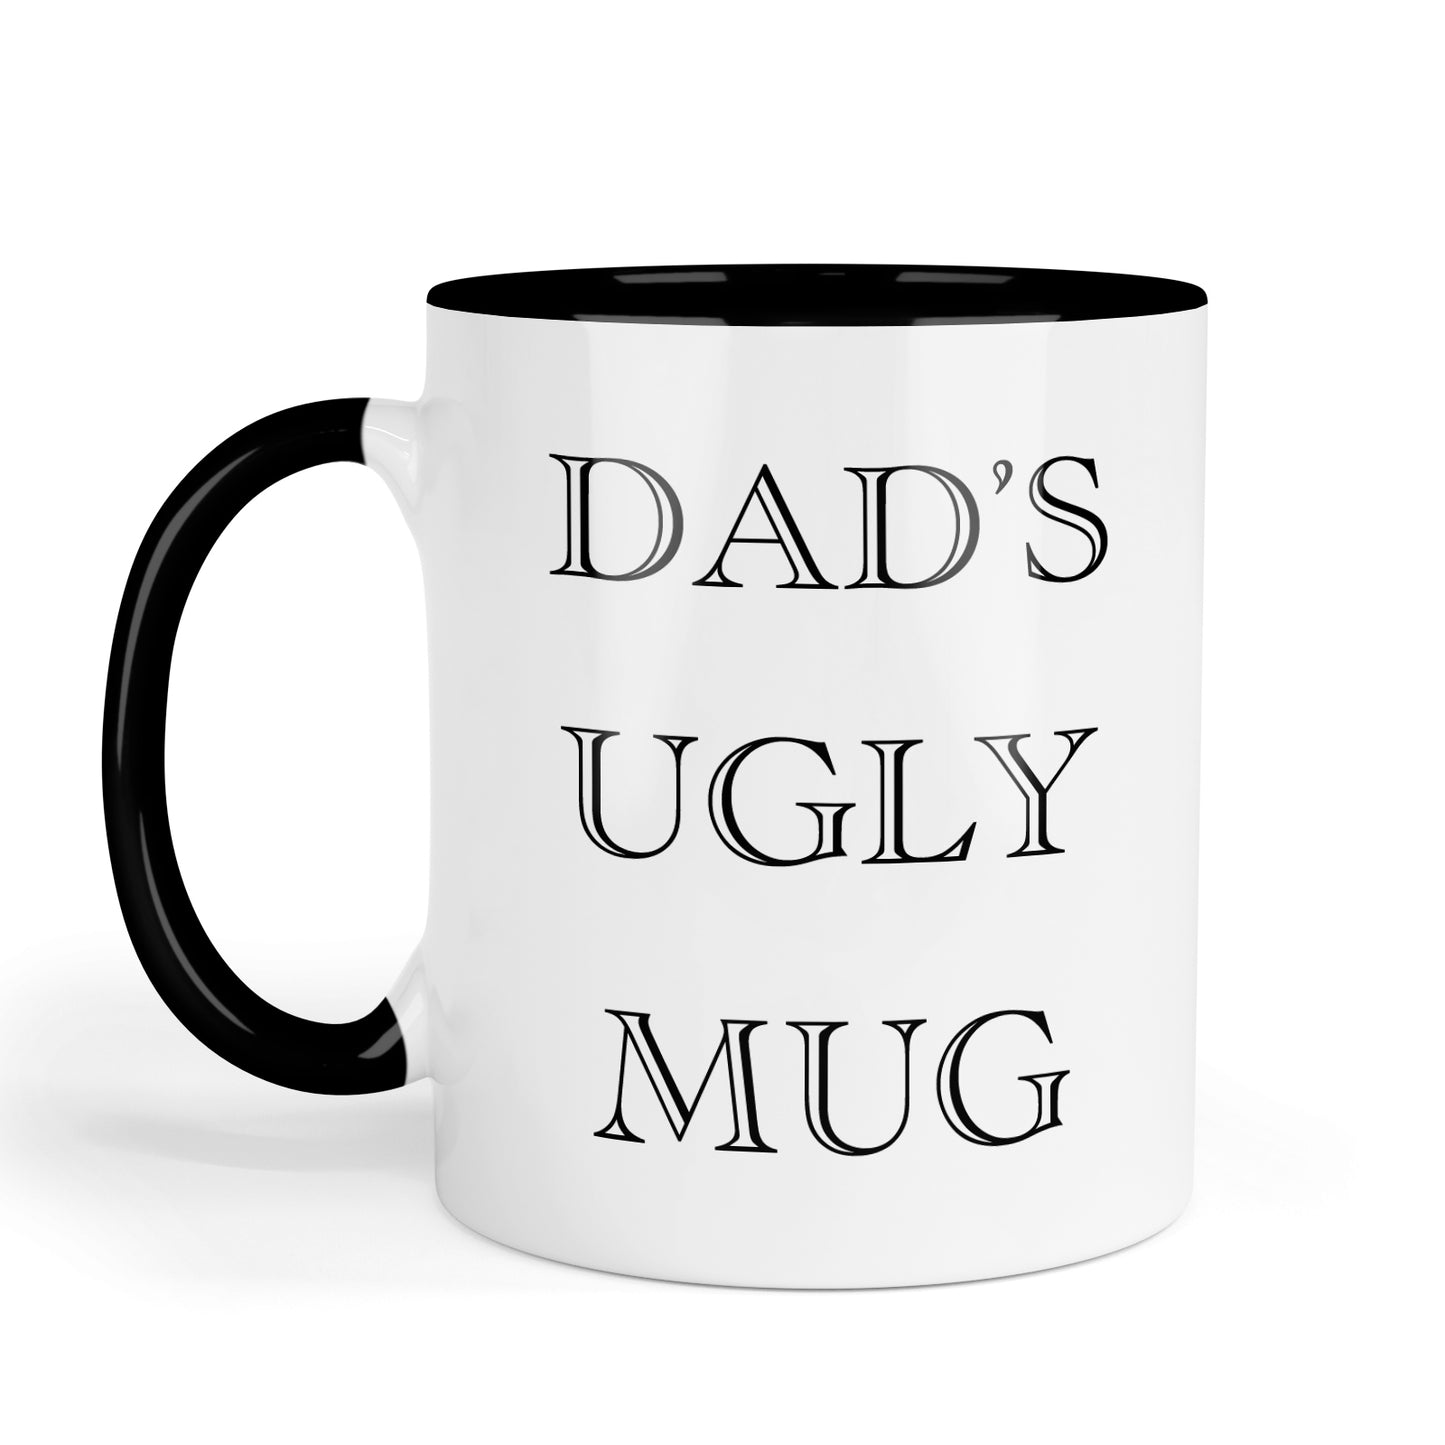 Dad's Ugly Mug mug.